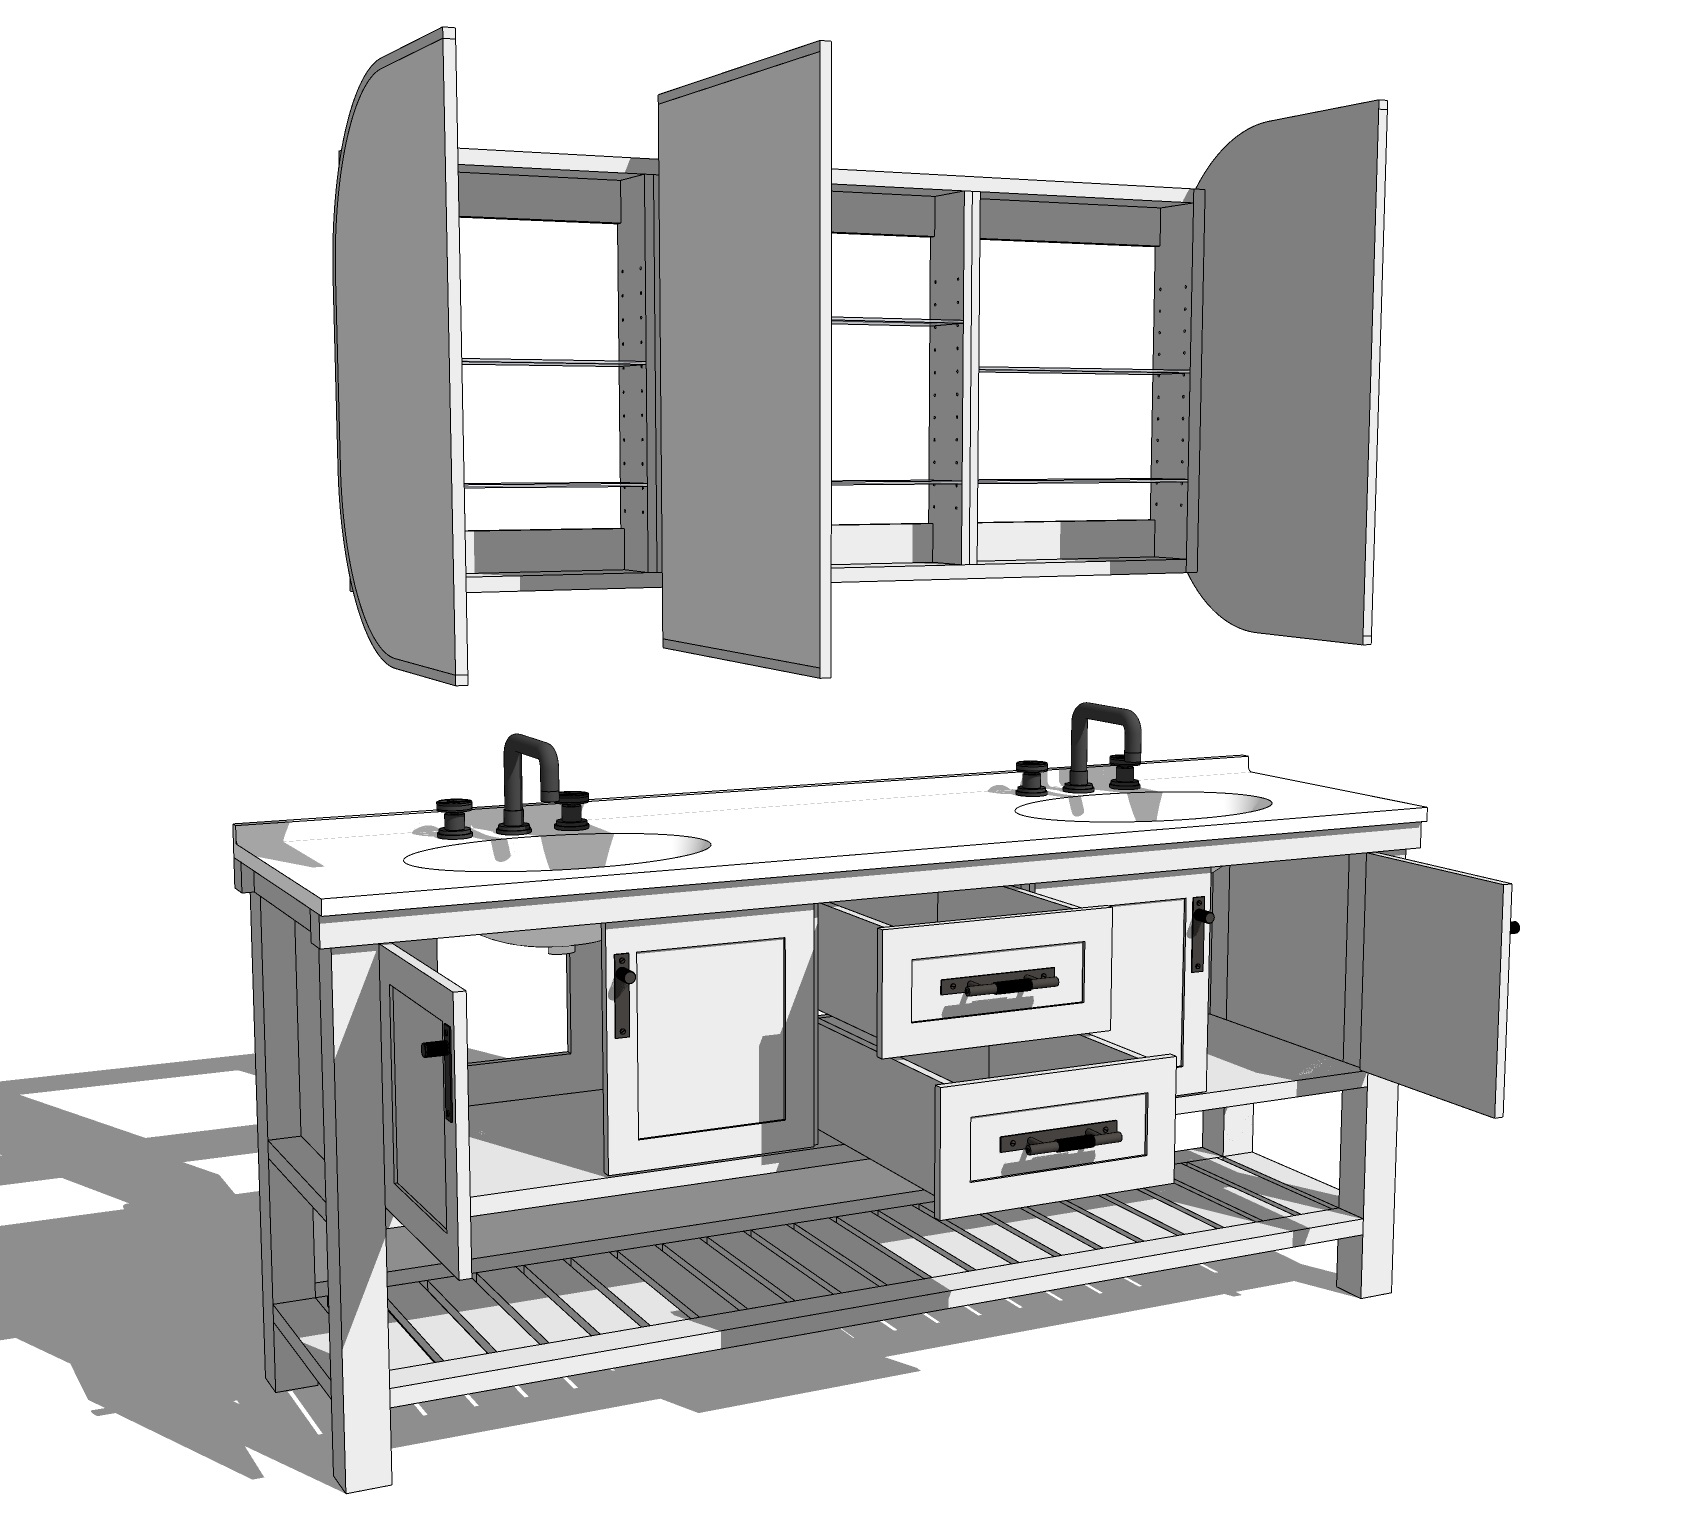 Furniture-design-furniture-10